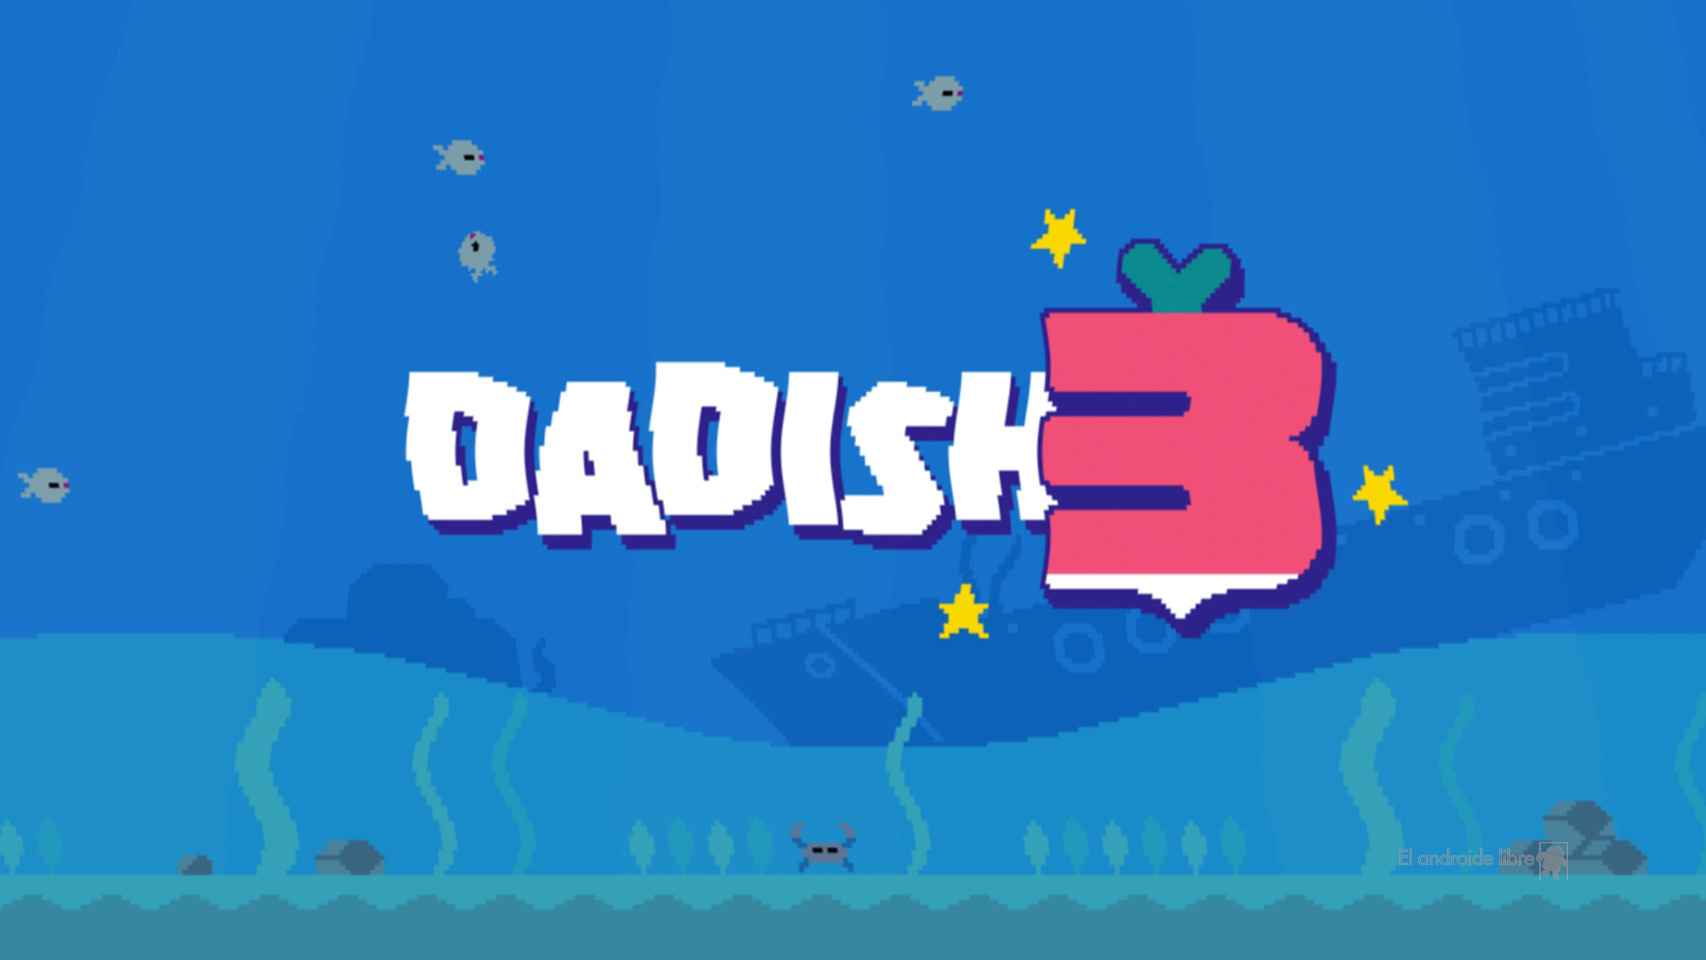 Dadish 3 llega a Android con mucho contenido